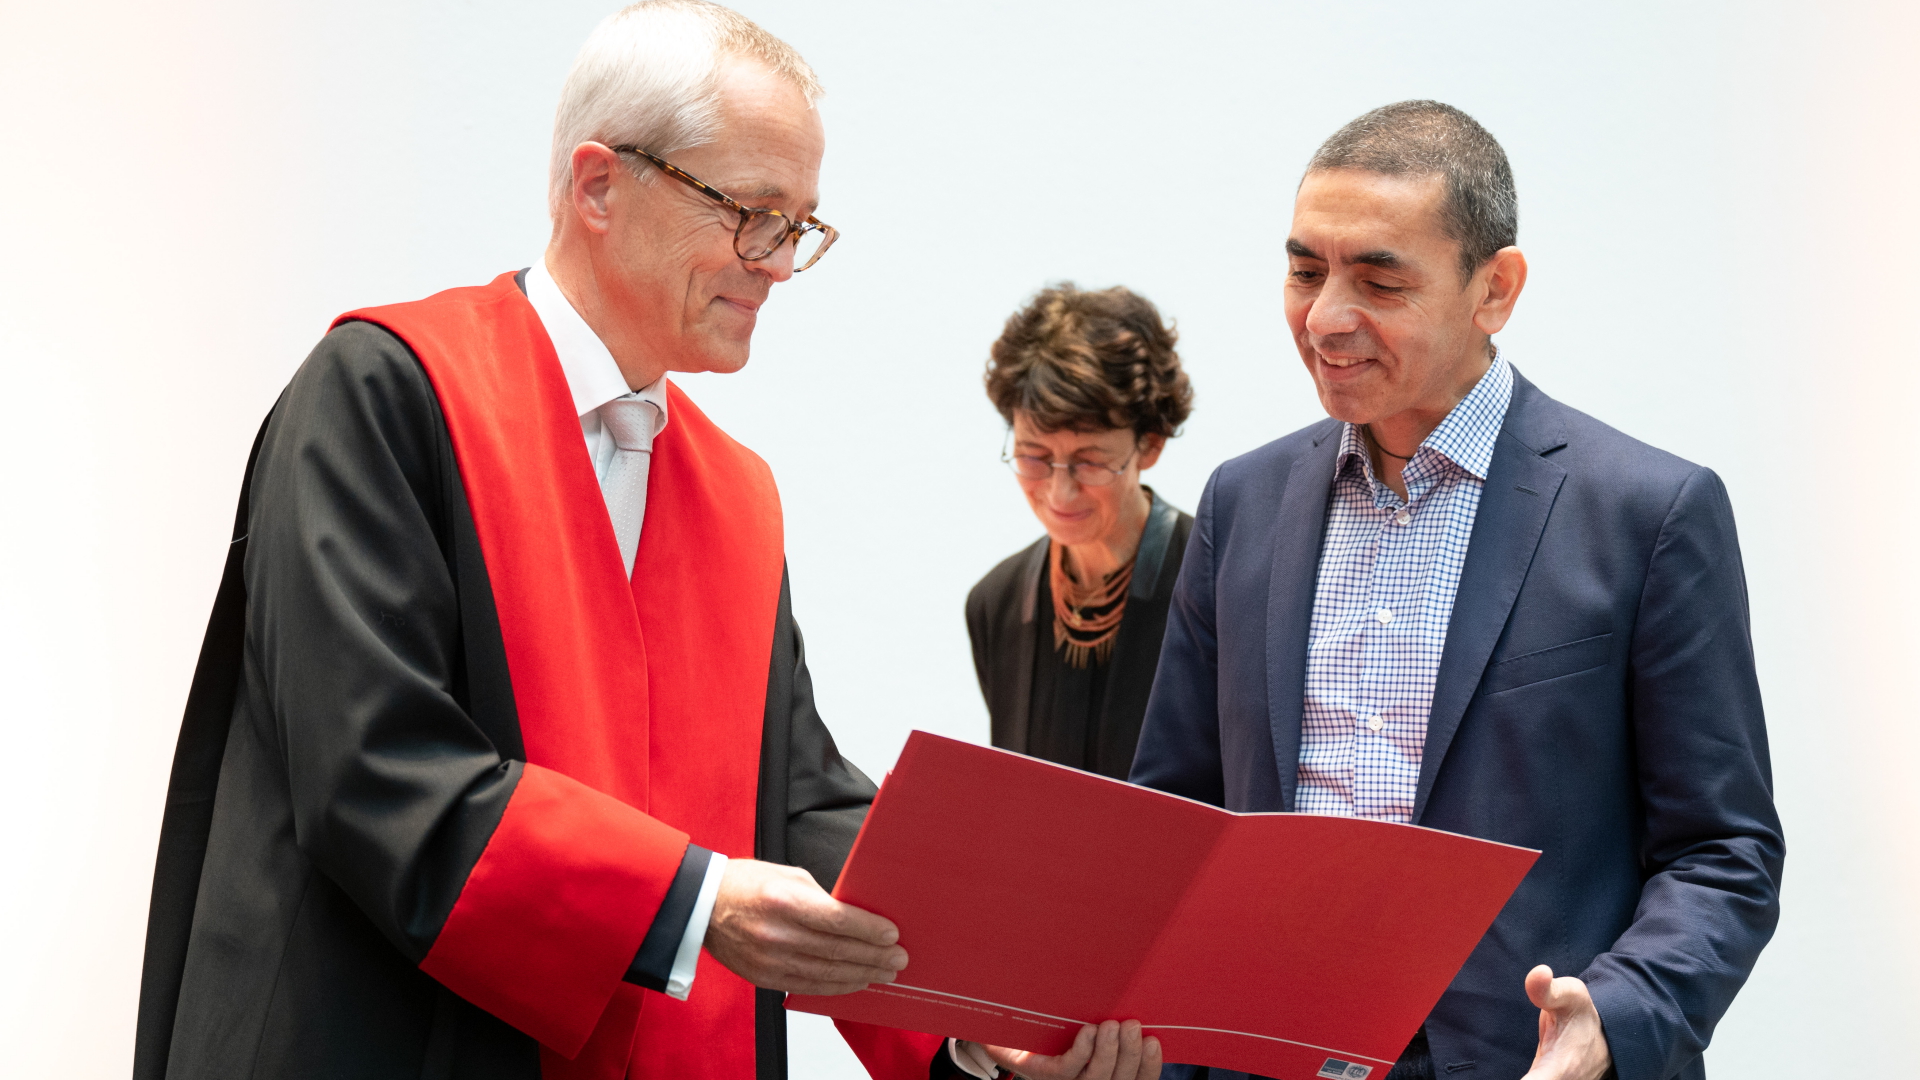 Die Gründer der deutschen Pharmafirma BioNTech/Pfizer, Özlem Türeci und Ugur Sahin, sind mit der Ehrendoktorwürde der medizinischen Fakultät der Universität Köln ausgezeichnet worden. | dpa